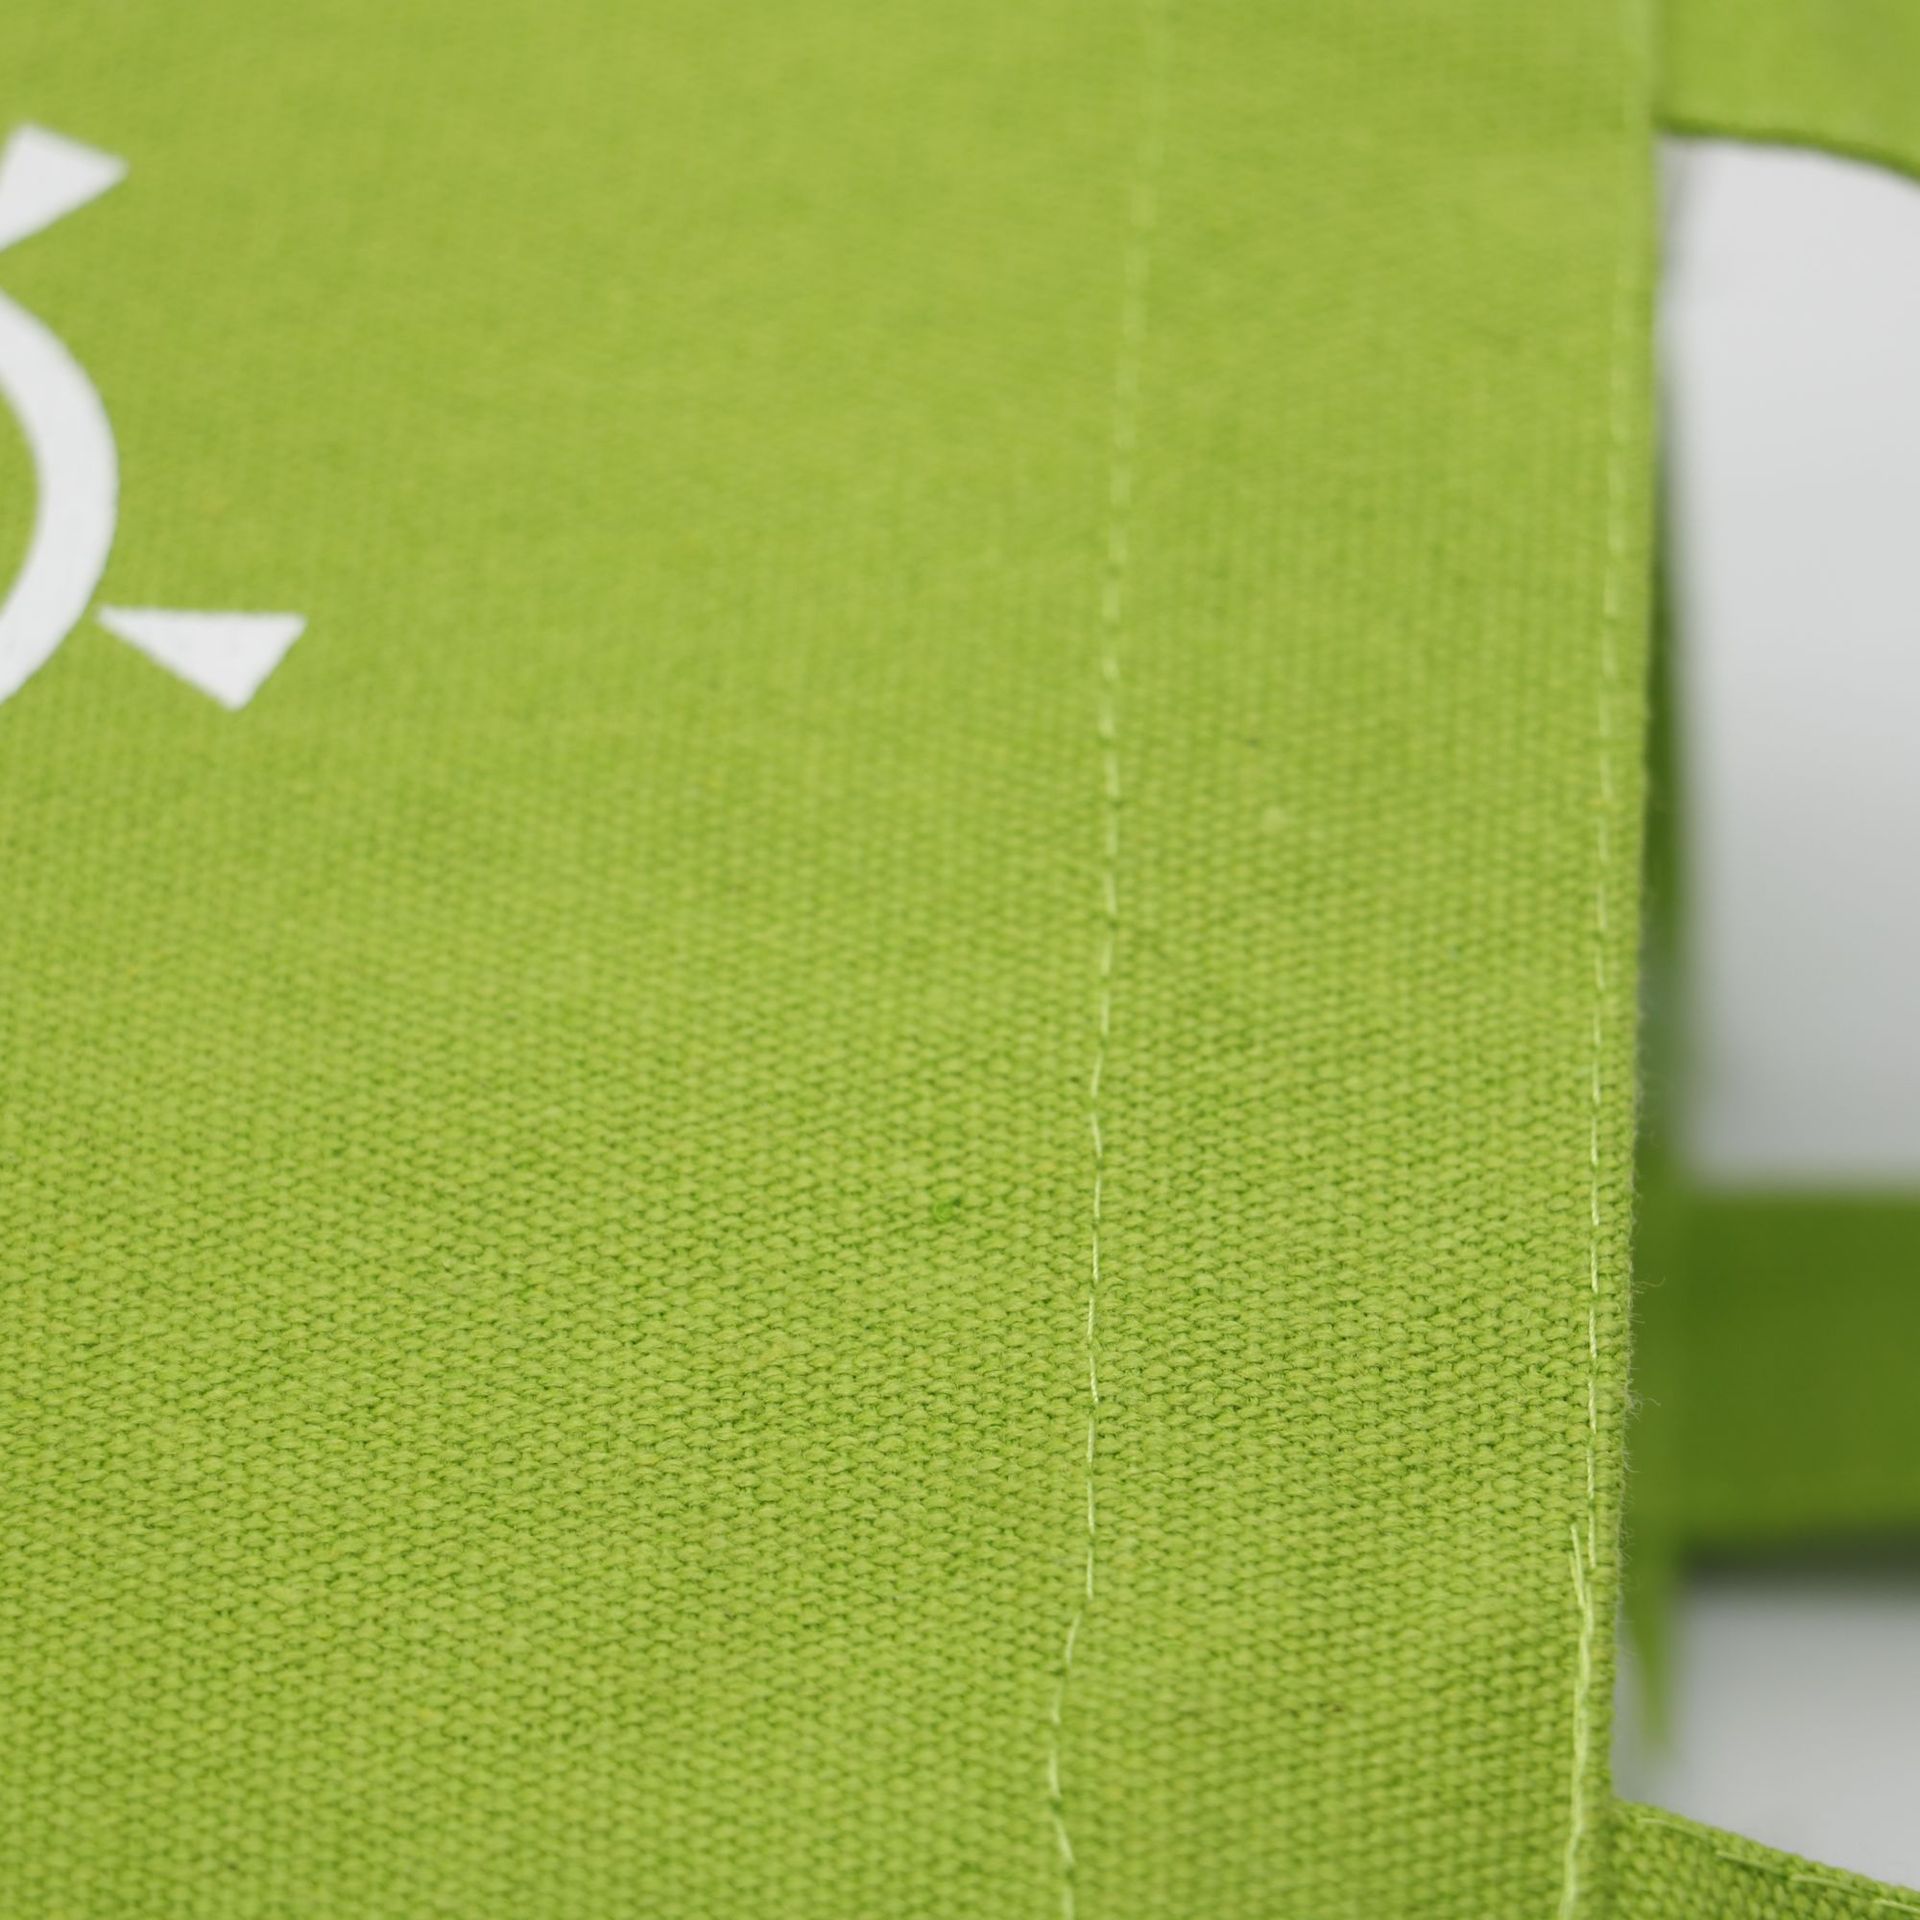 厂家定制棉布袋创意彩印环保帆布袋便携式购物袋全棉帆布袋定做示例图6